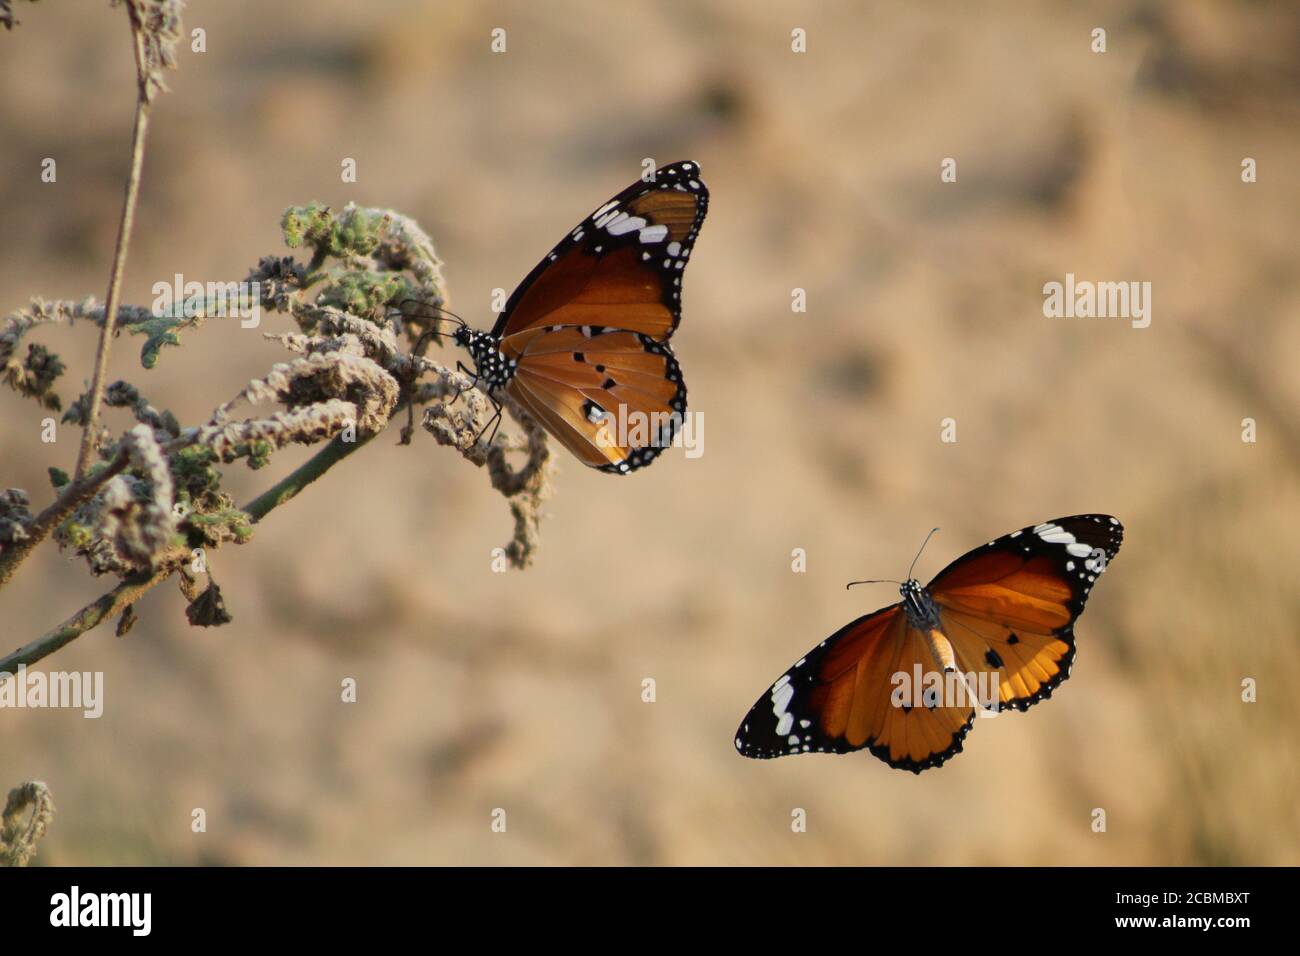 Two beautiful monarch butterflies closeup Stock Photo